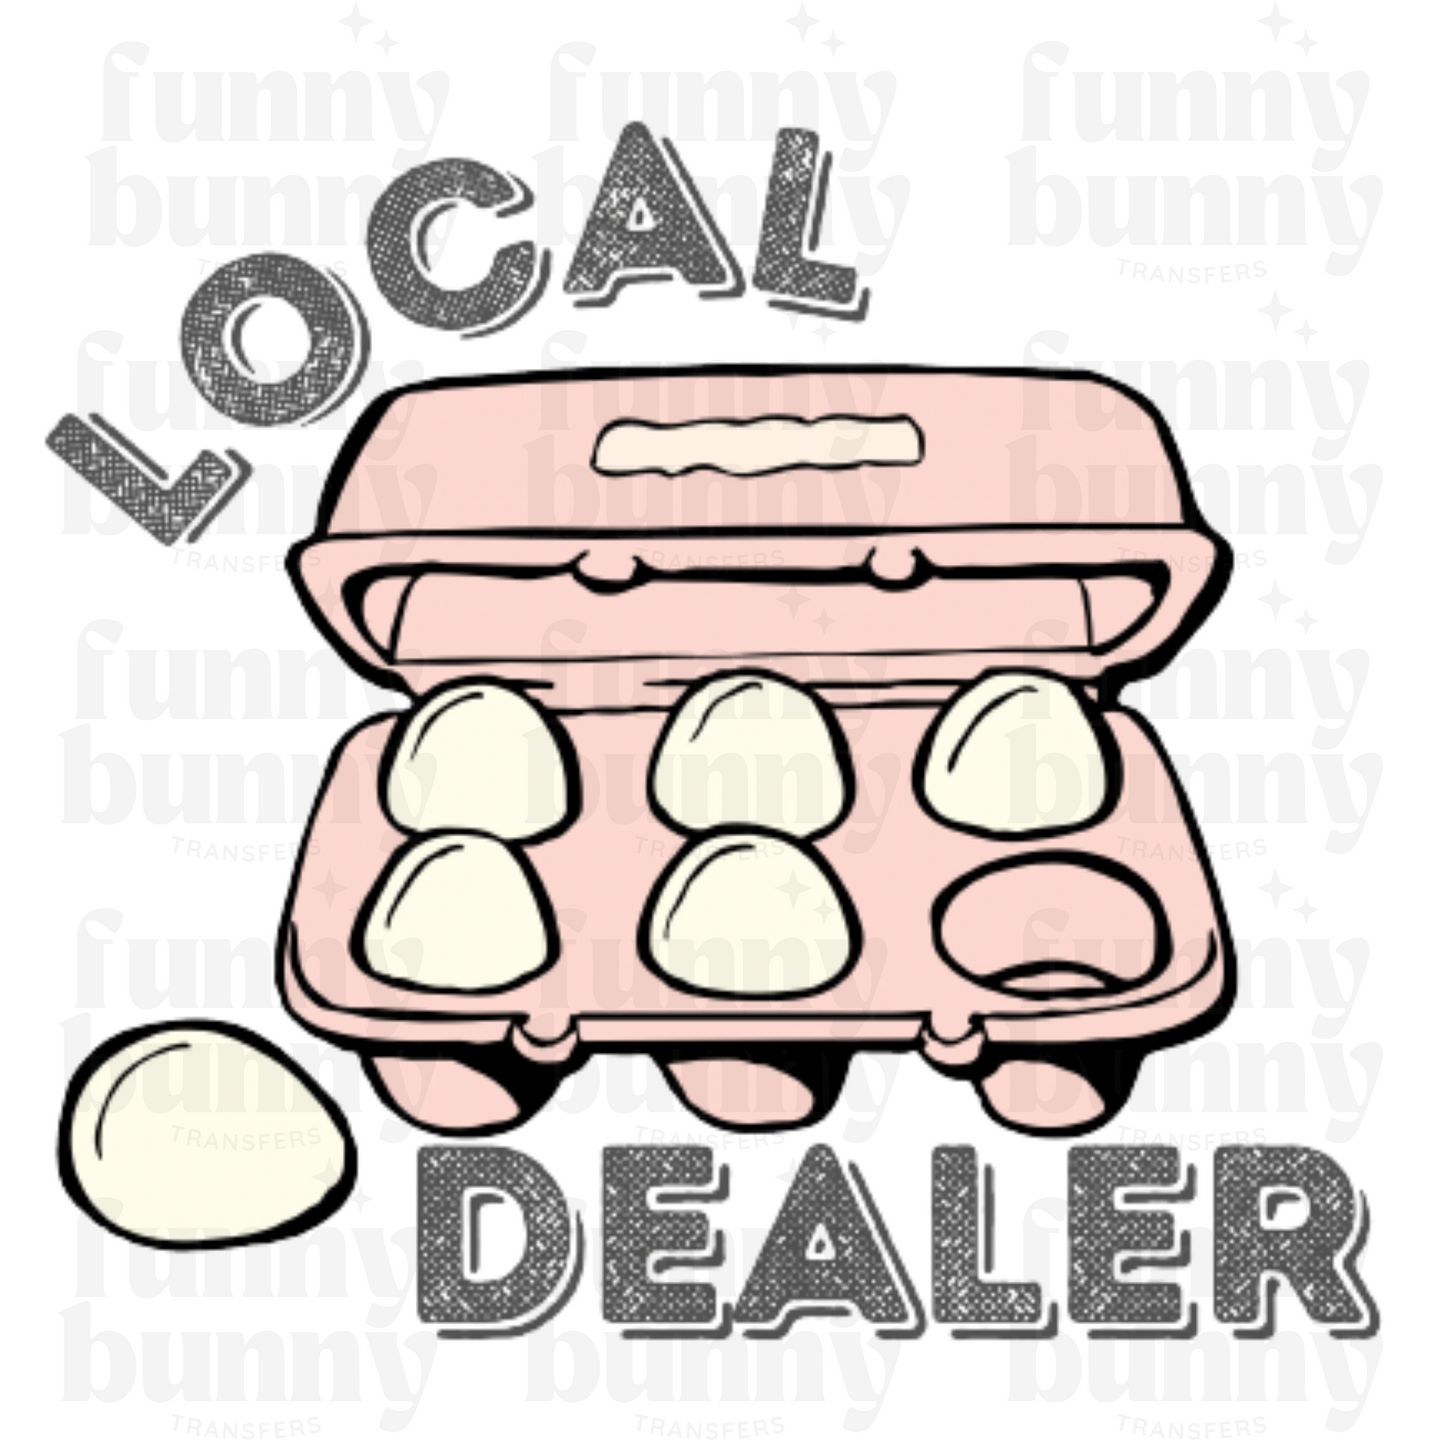 Local Dealer - Sublimation Transfer